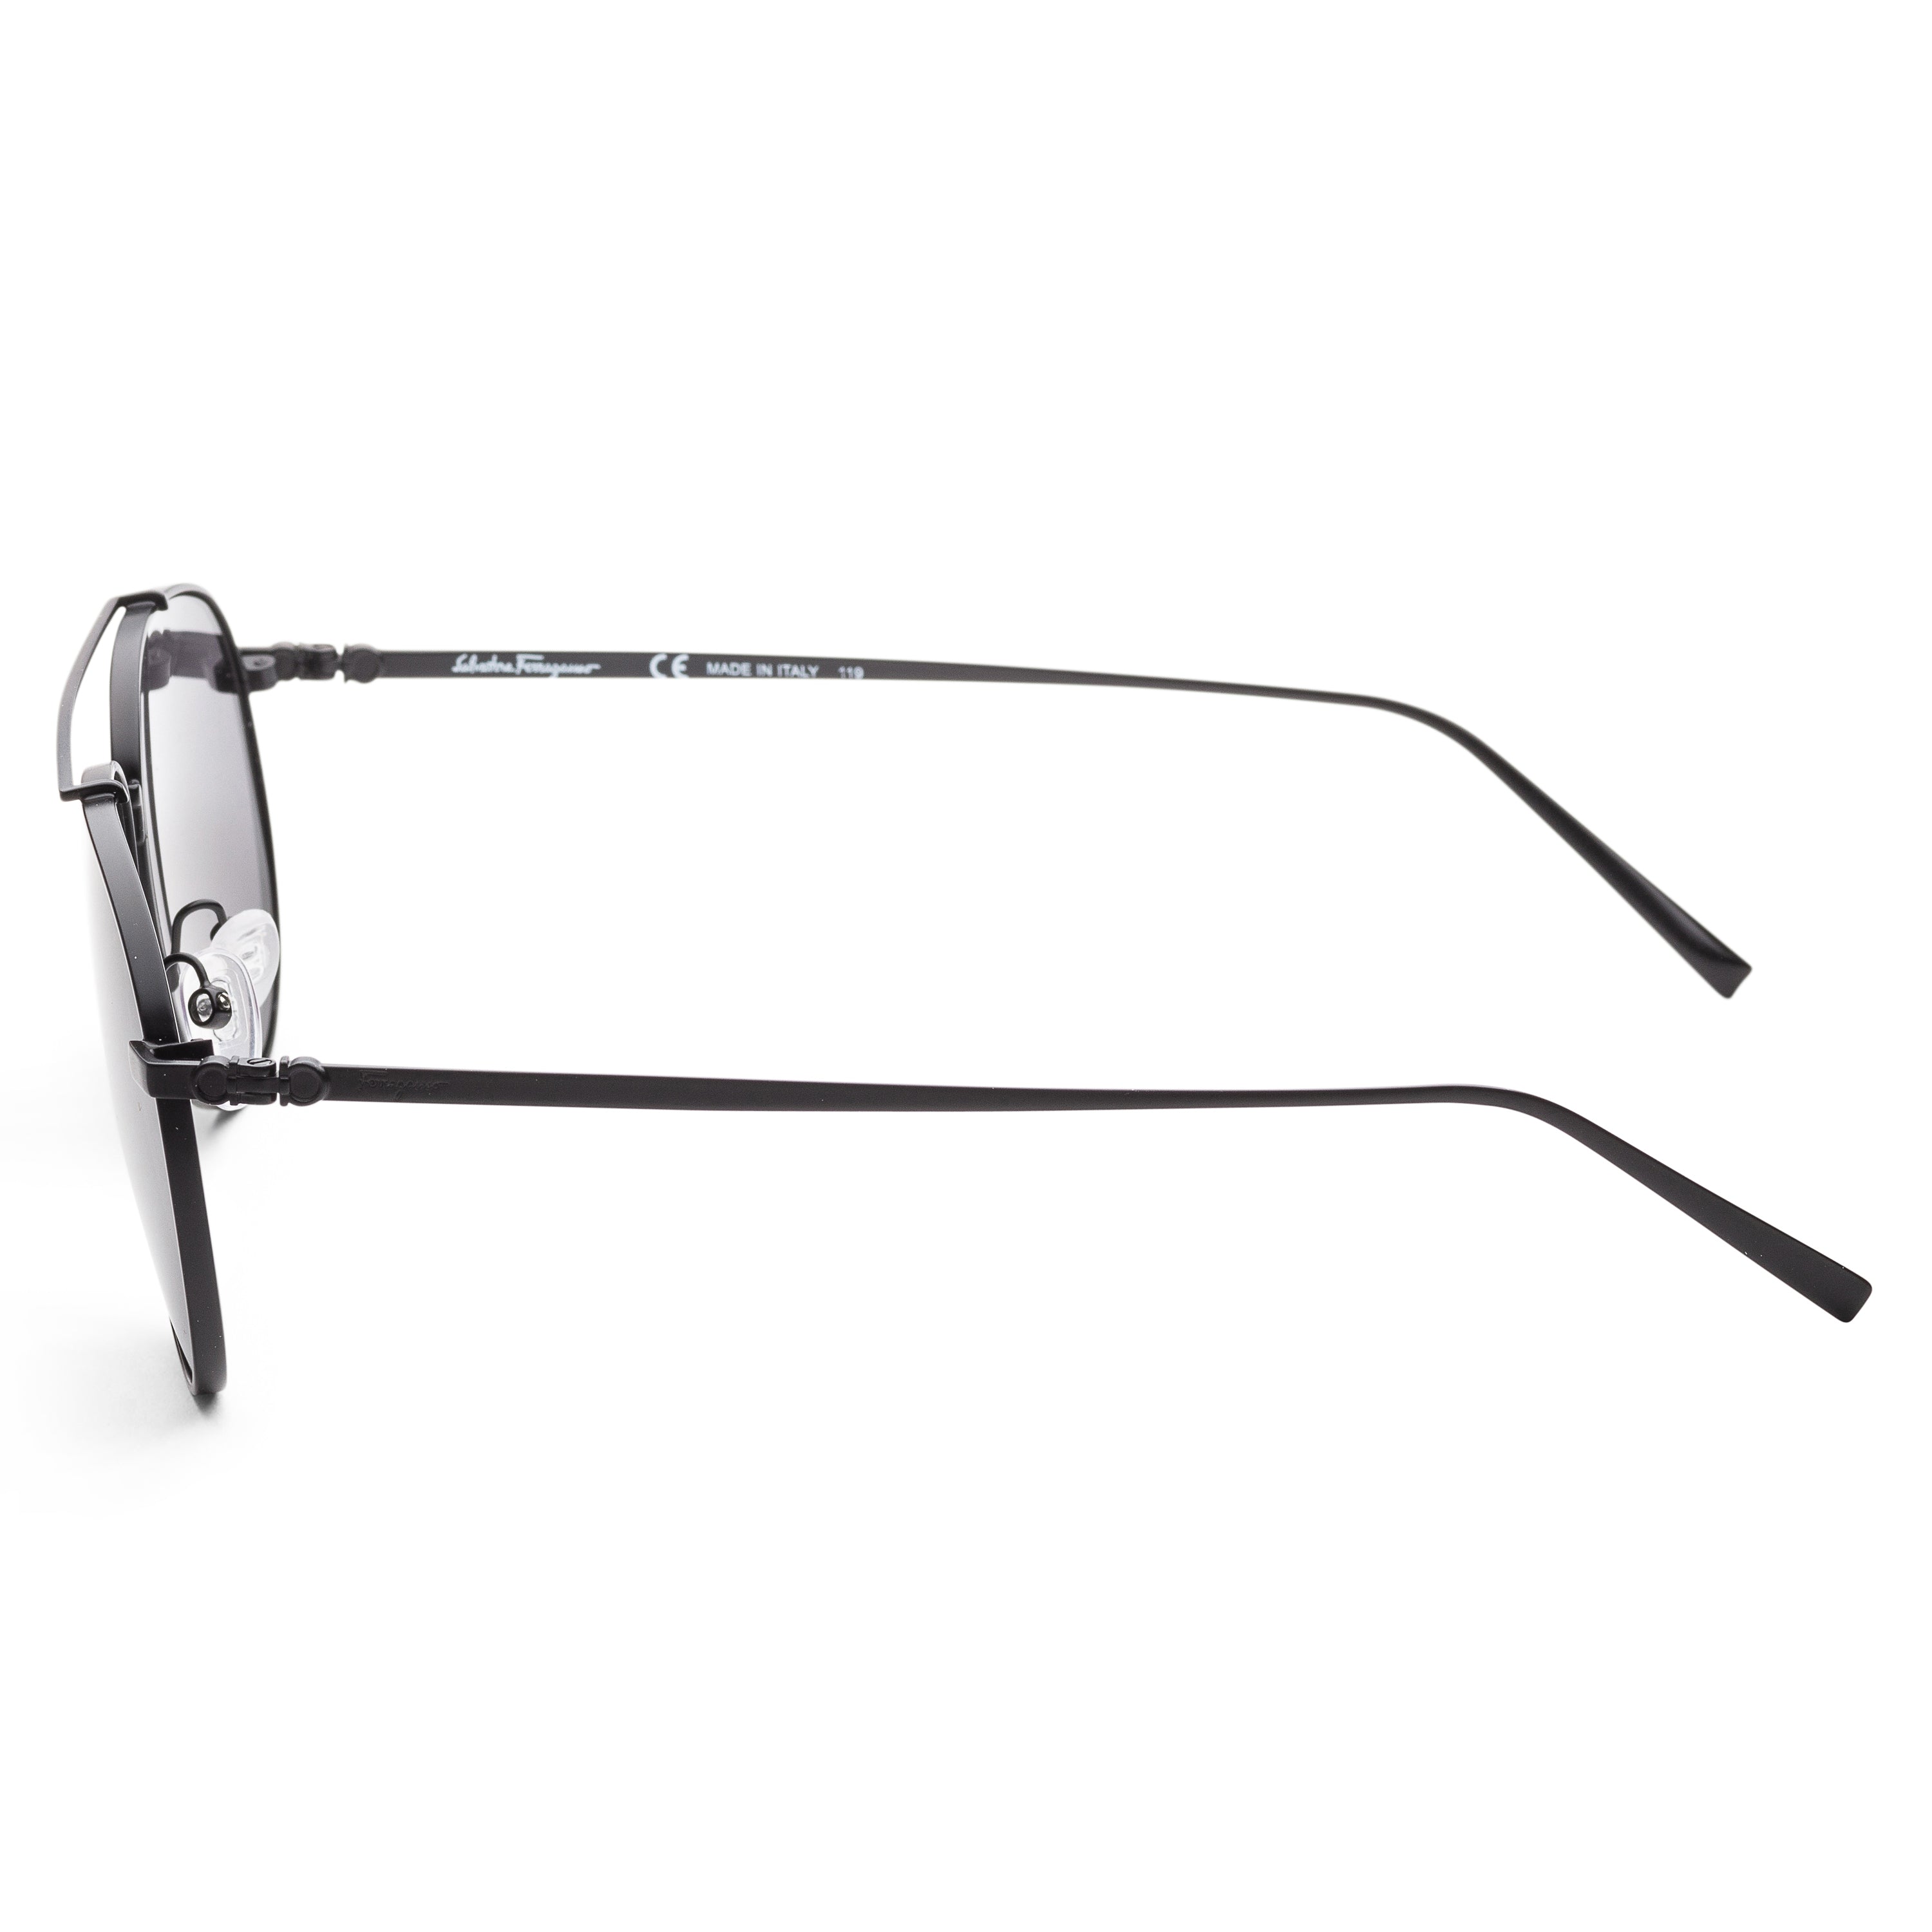 title:Ferragamo Men's SF201S-6015002 Fashion 60mm Matte Black Sunglasses;color:Black Lens, Matte Black Frame